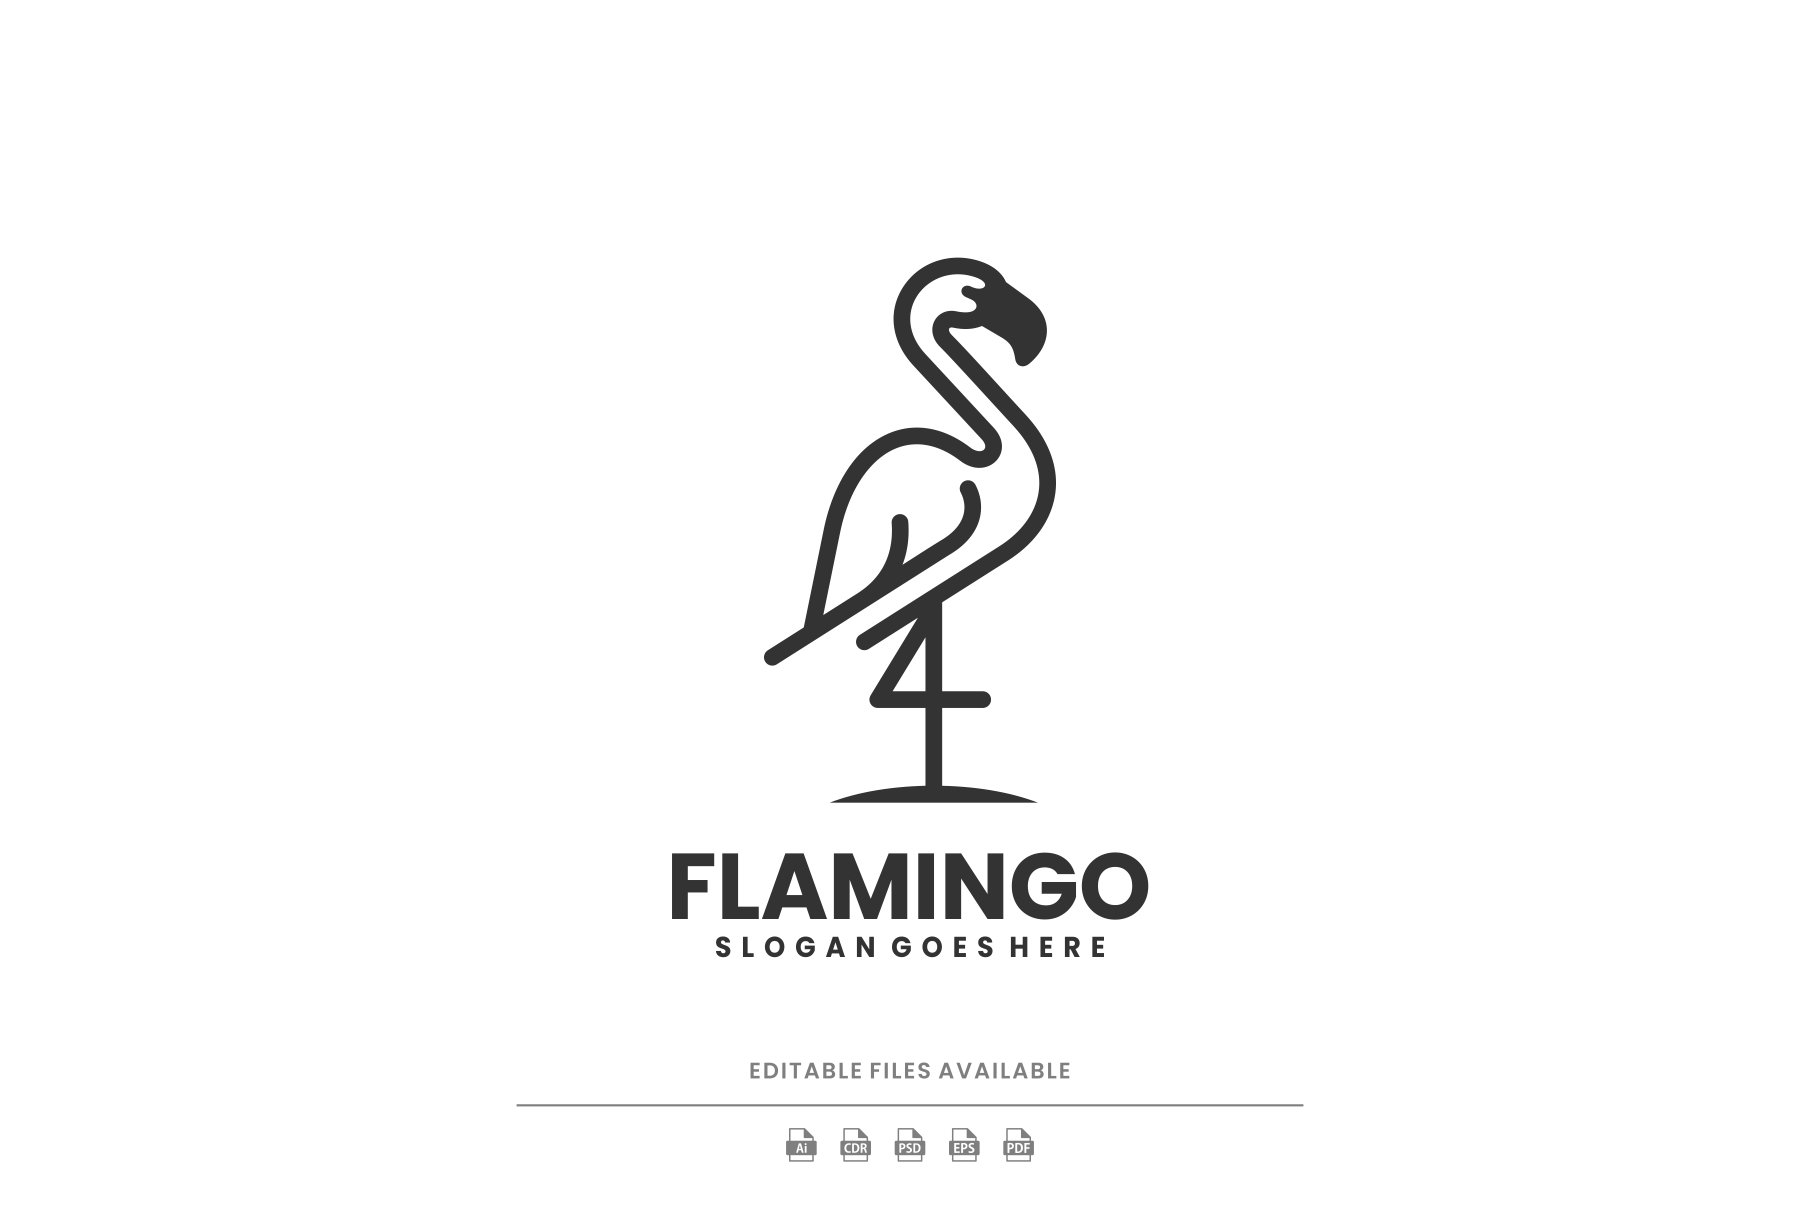 Flamingo Line Art Logo cover image.